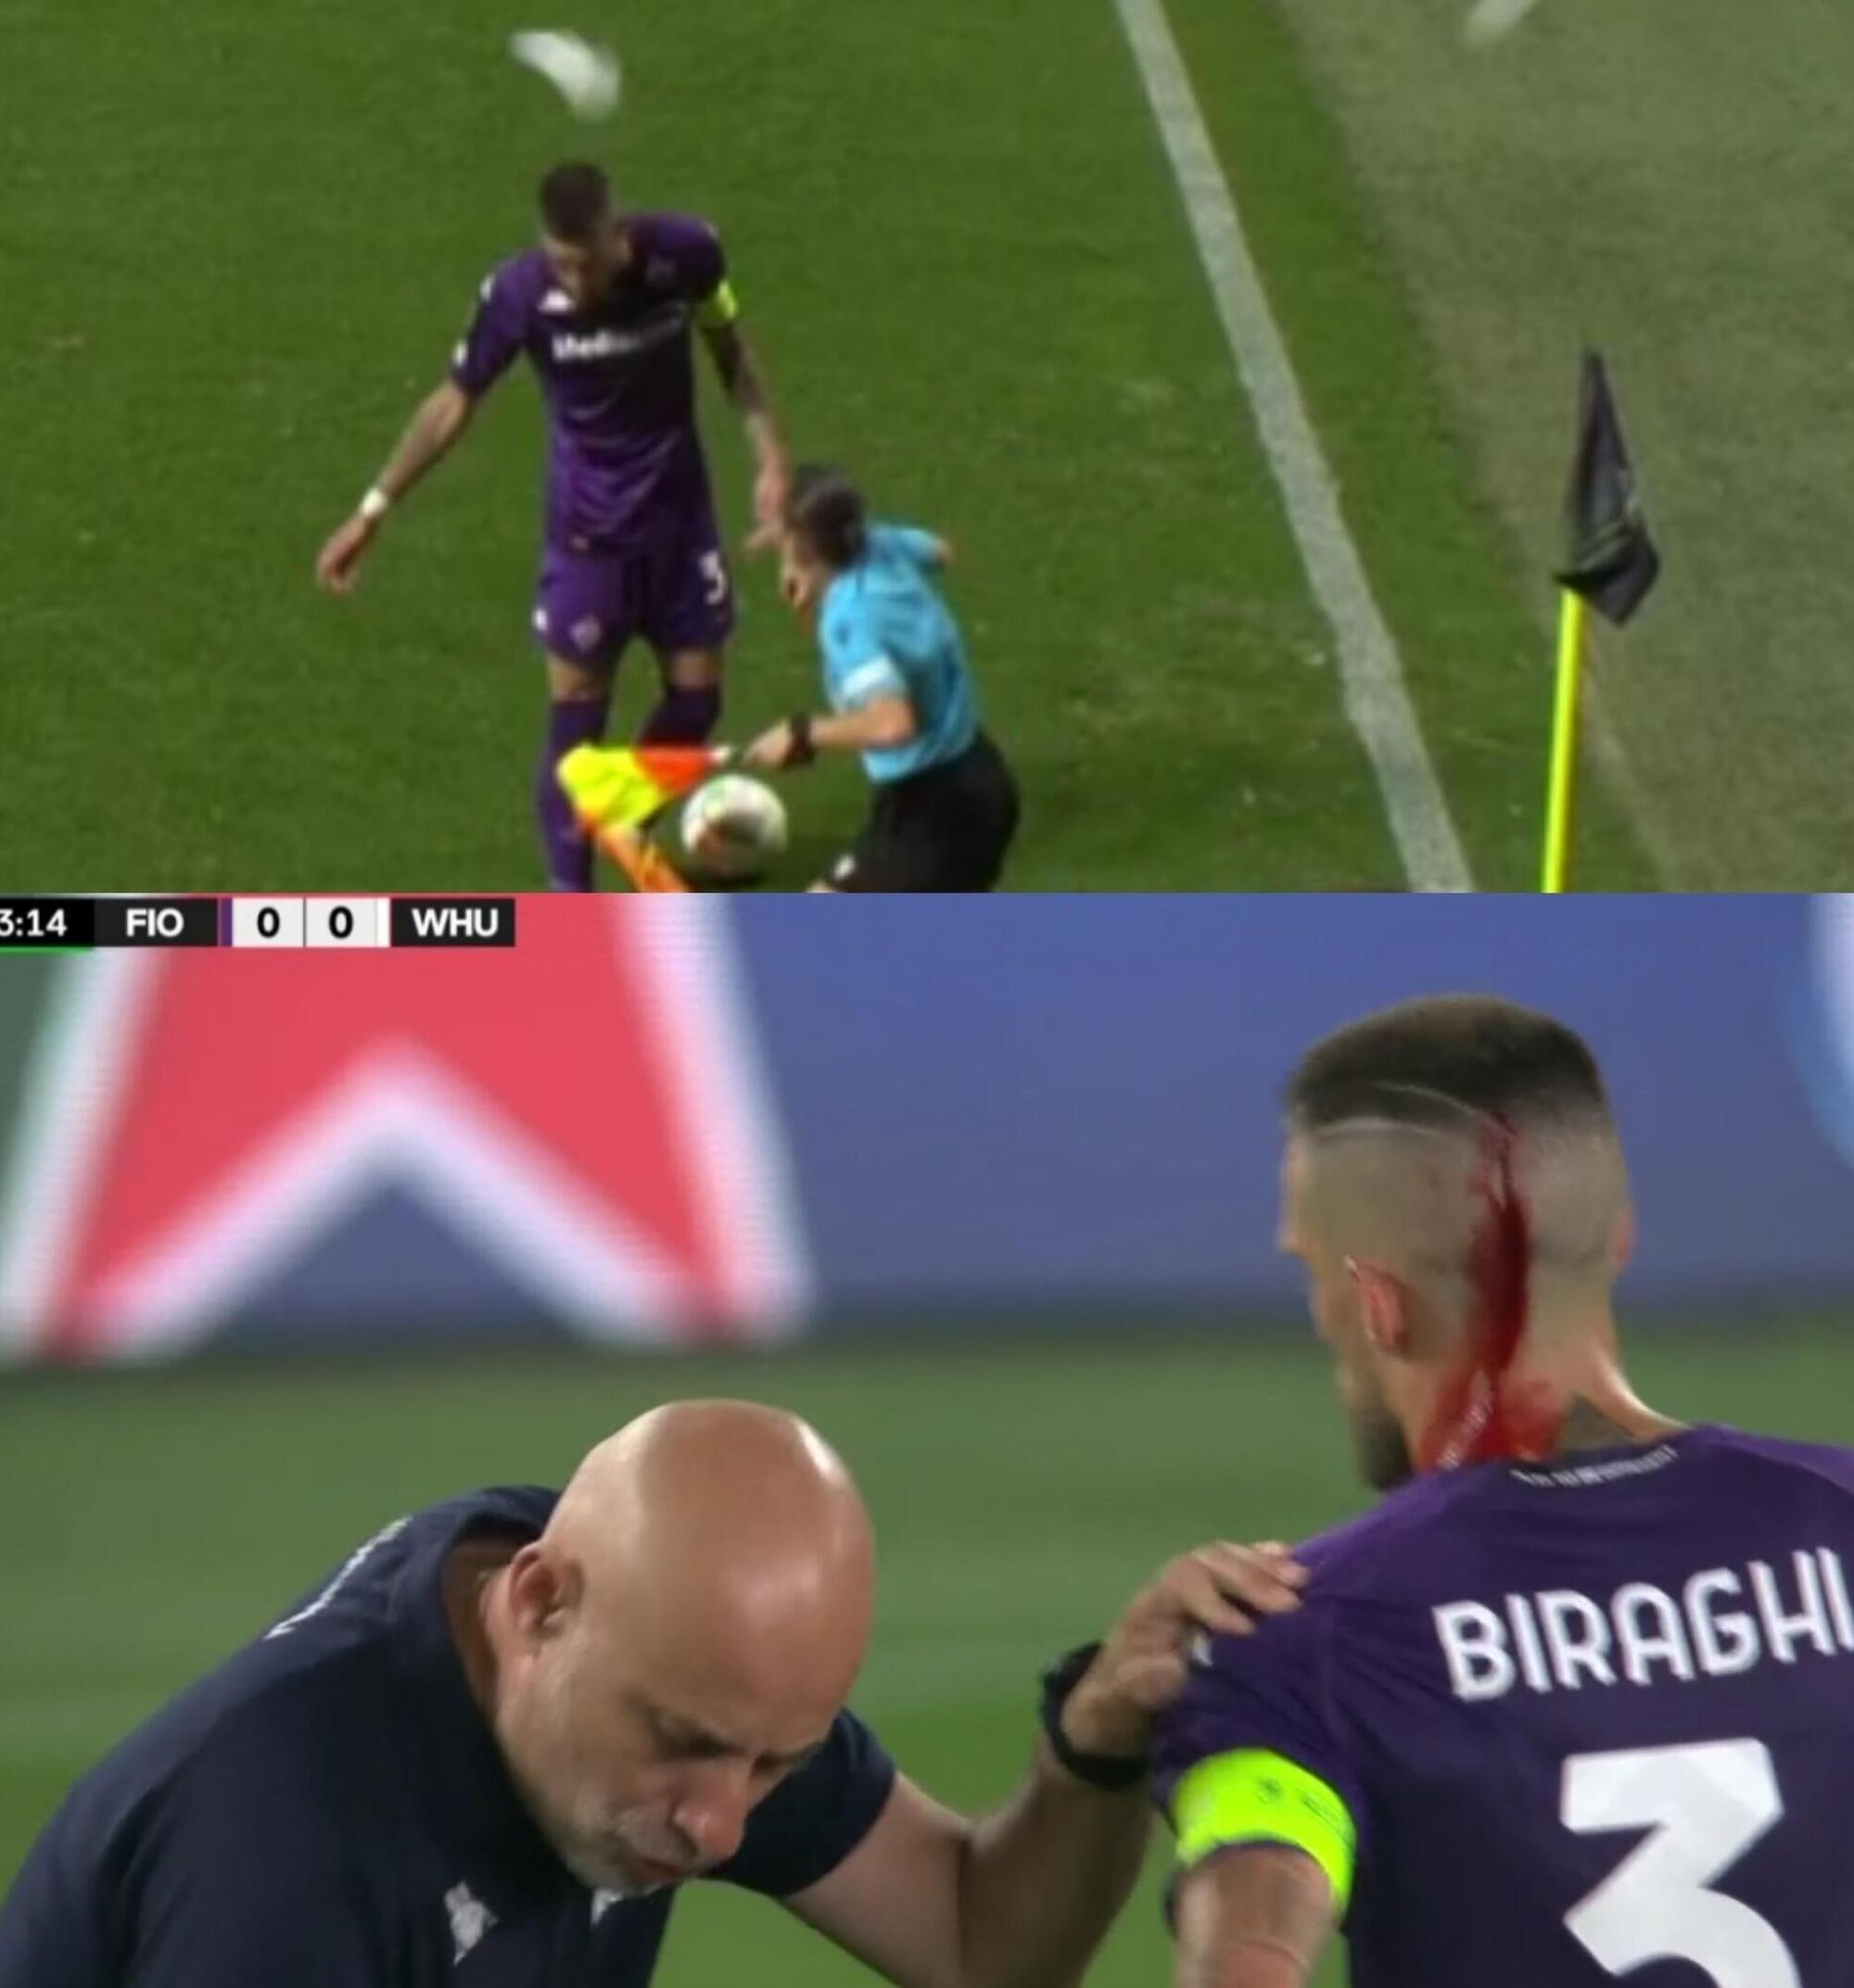 Il lancio di oggetti contro il capitano della Fiorentina Biraghi durante la finale di Conference League